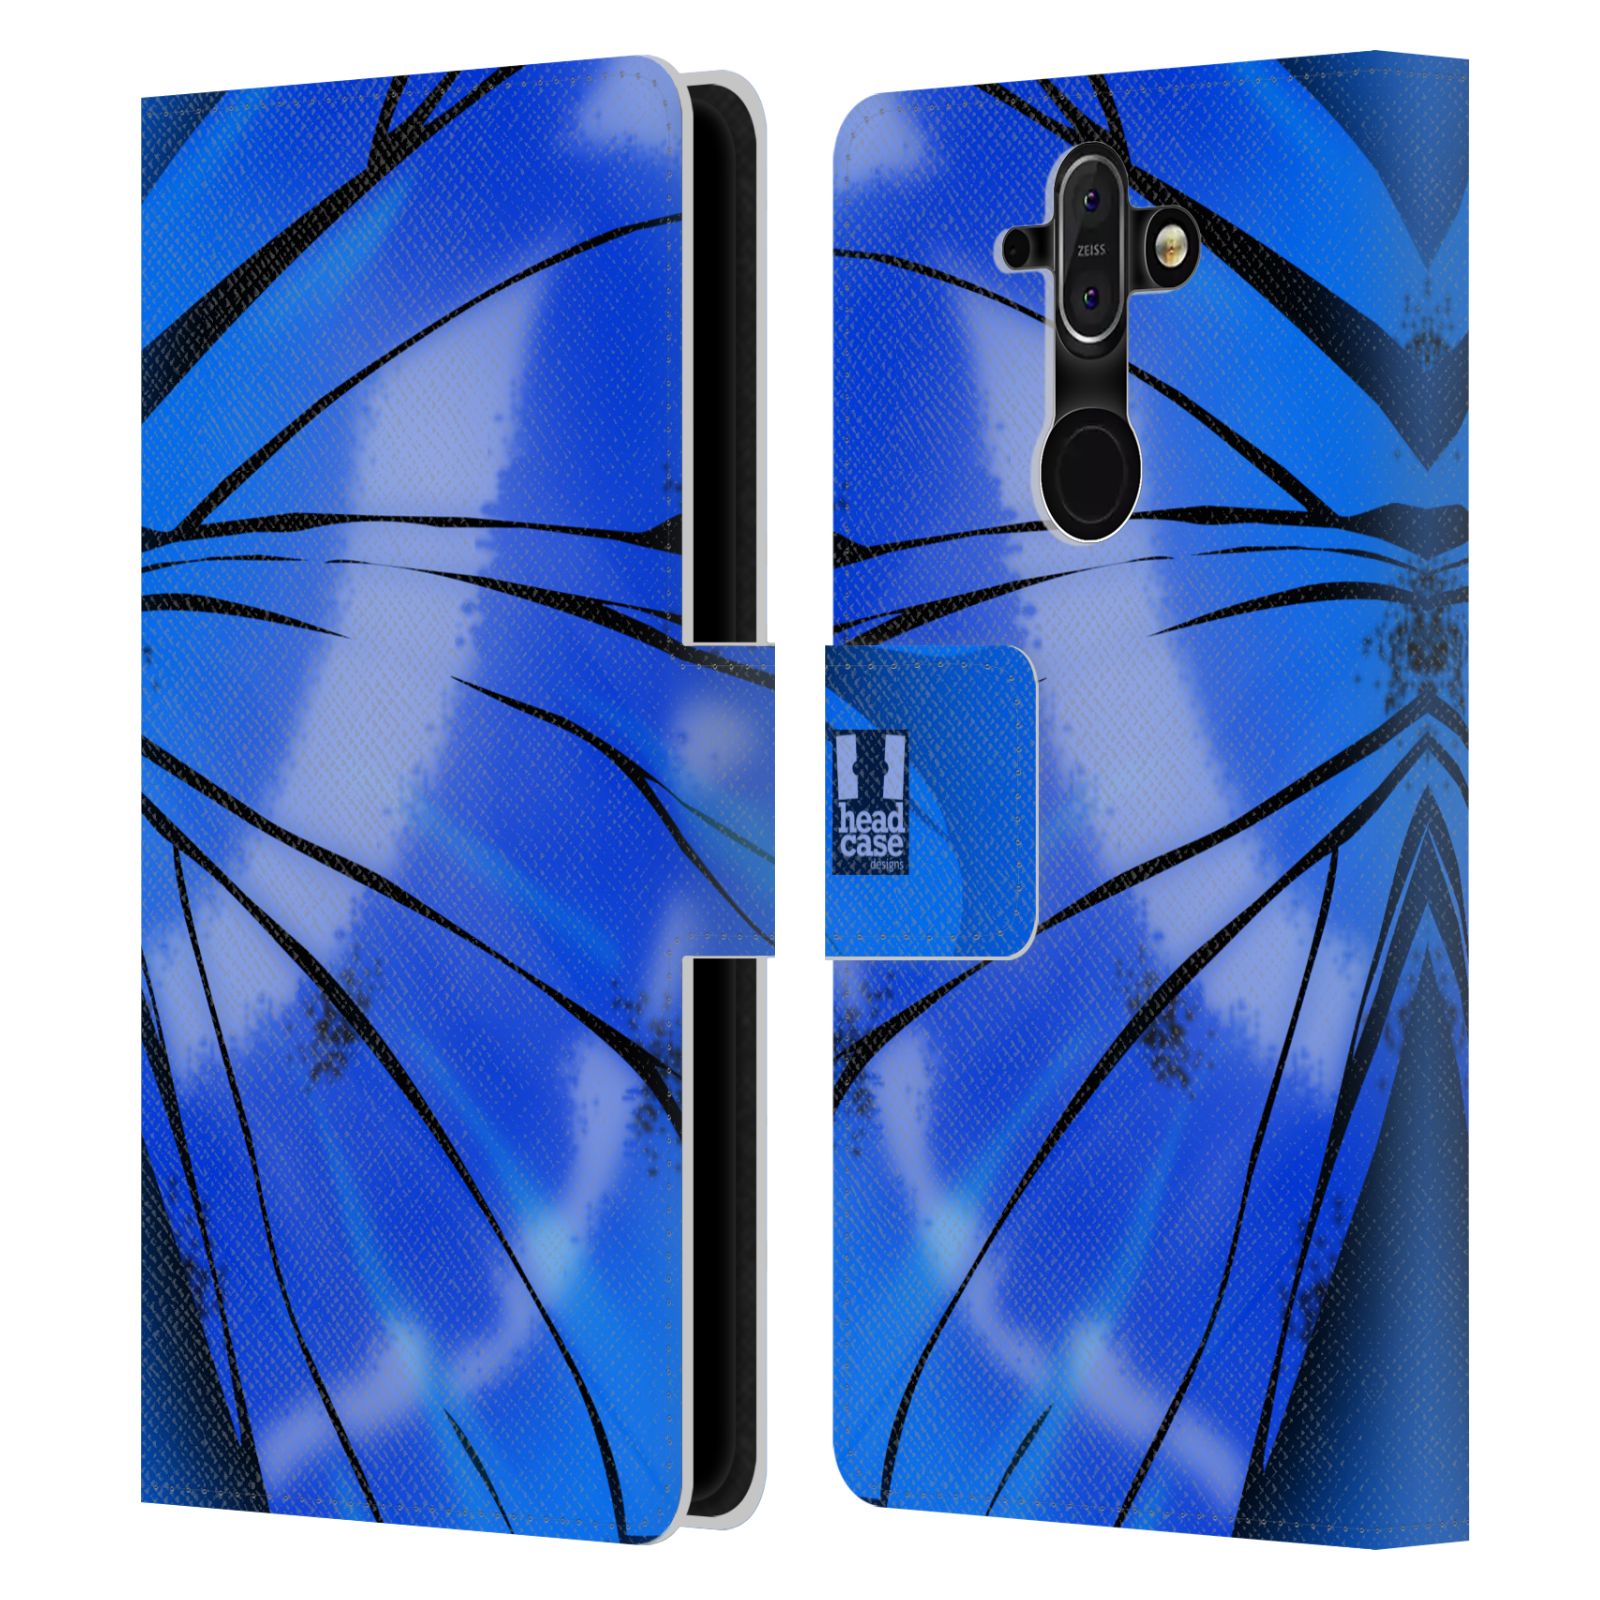 Pouzdro pro mobil Nokia 8 Sirocco - Motýlí křídla modrá barva